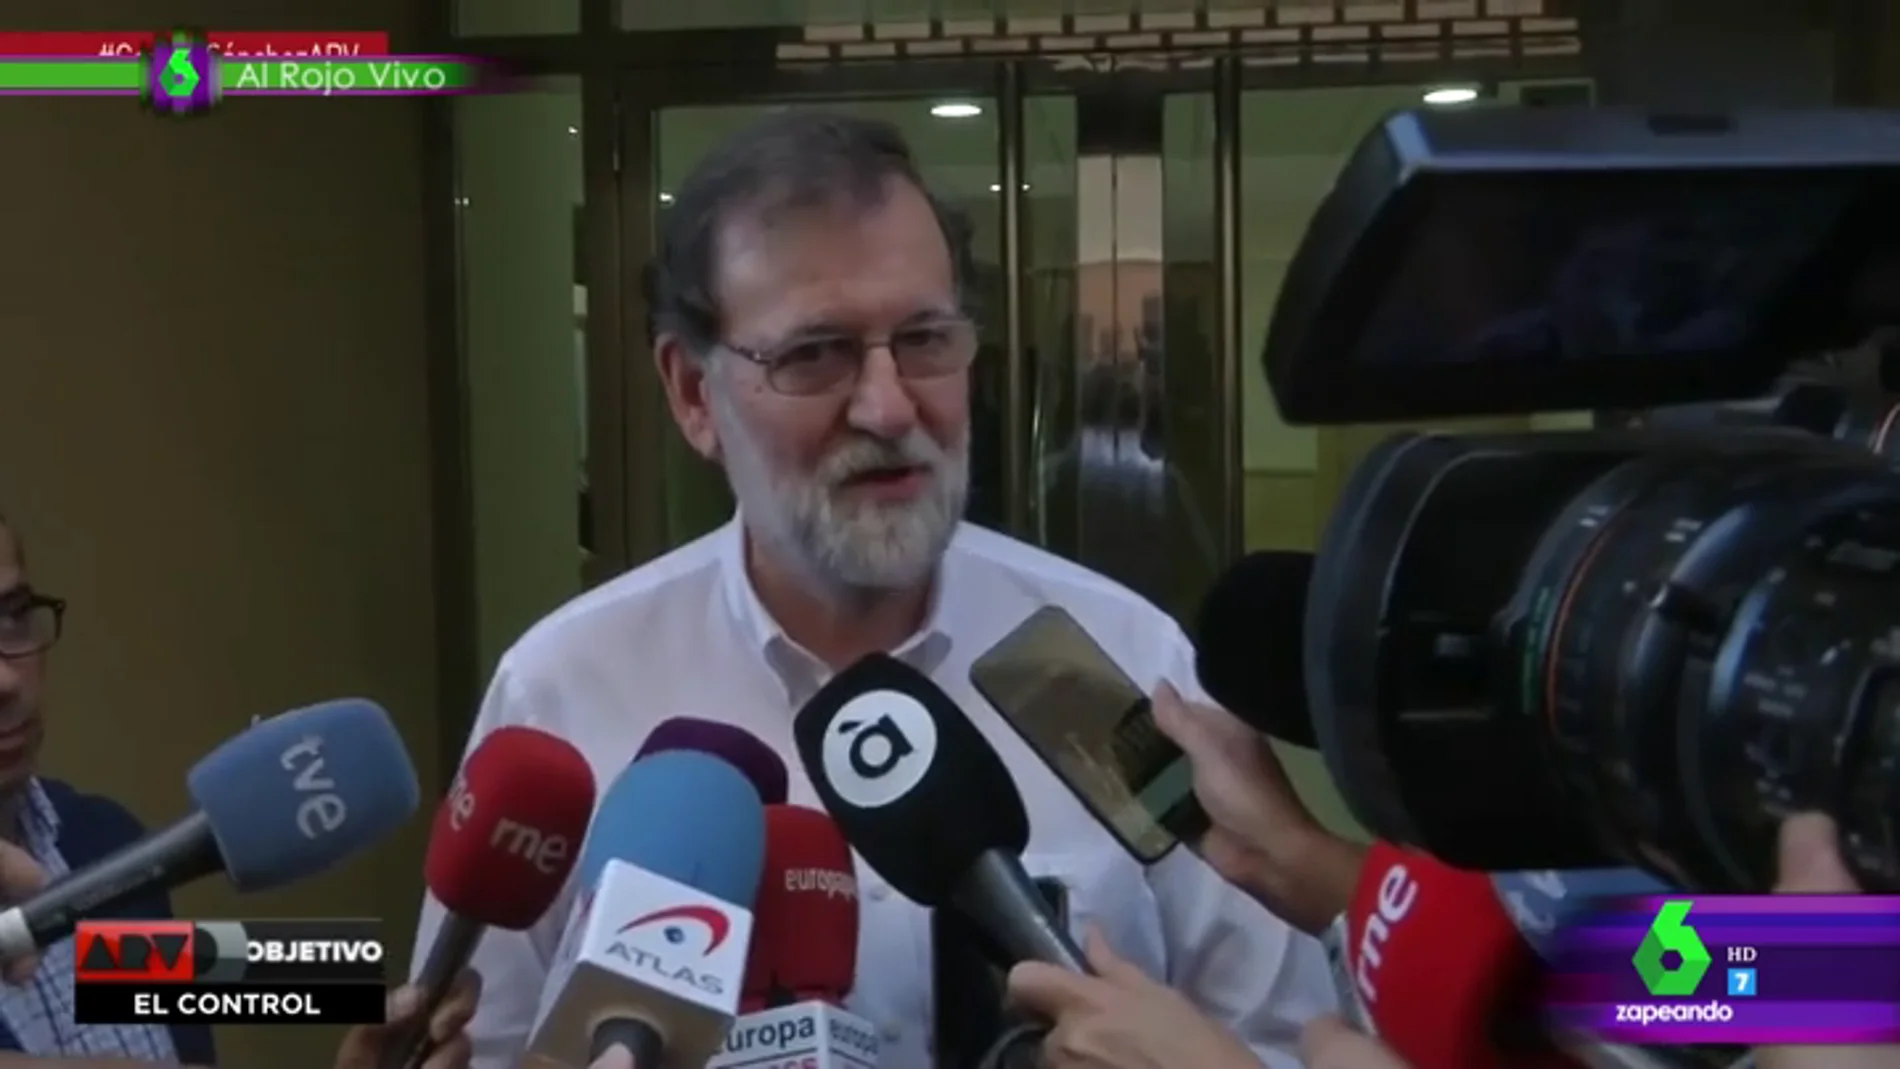 El 'zasca' de Ana Morgade a Rajoy: "Claro que está tranquilo como registrador de la propiedad si no se puso nervioso ni cuando registraron Génova"